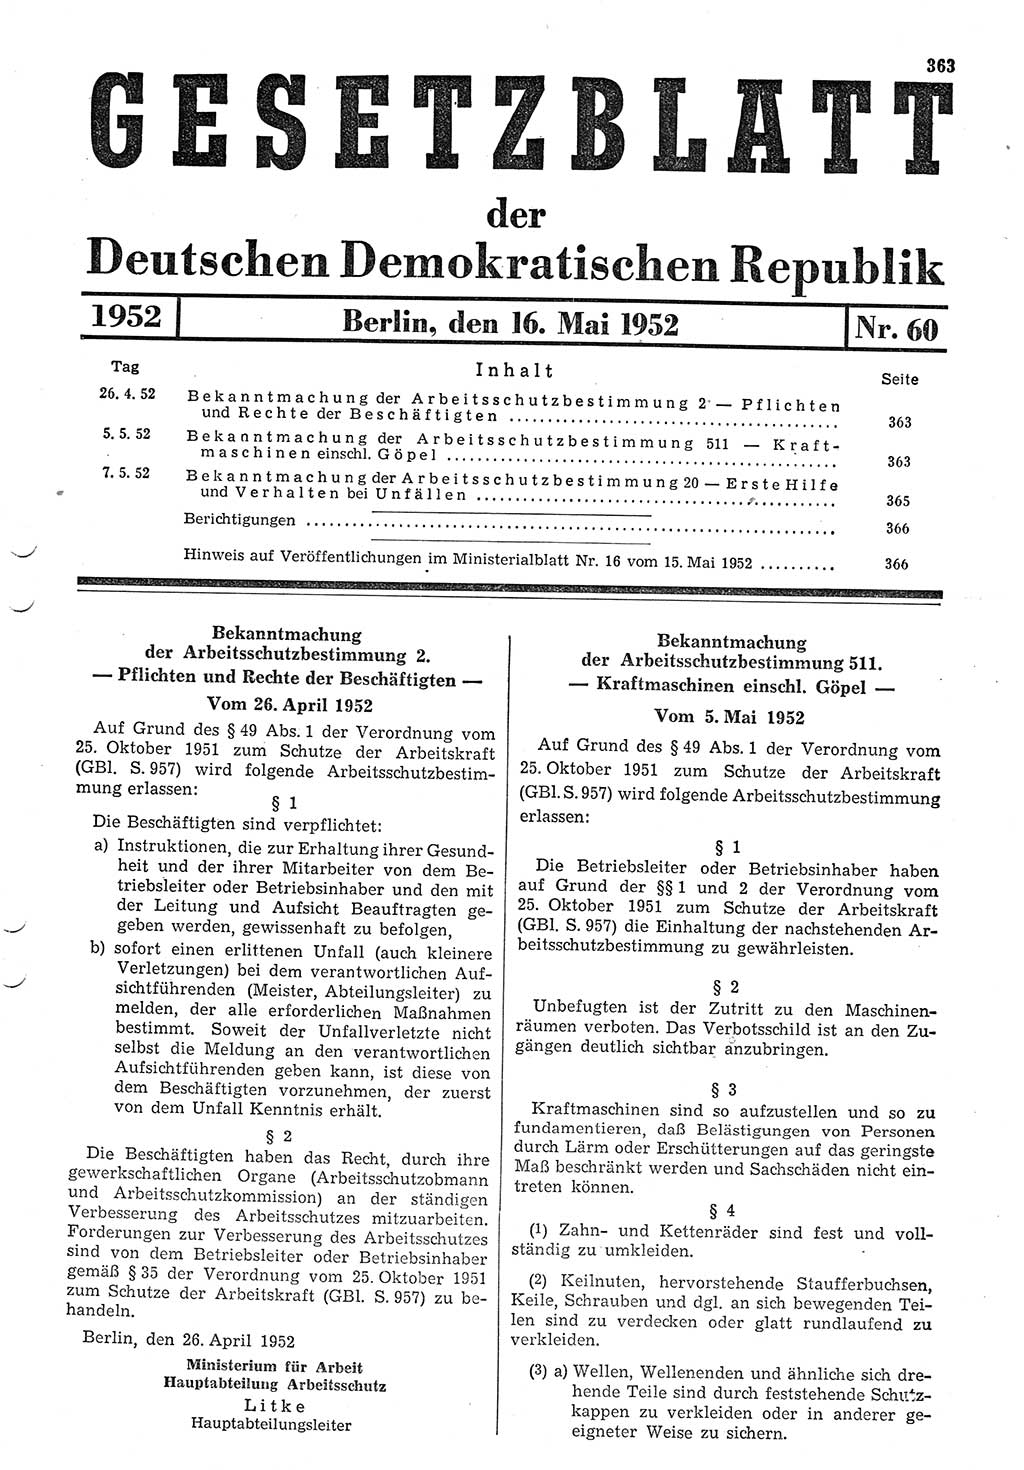 Gesetzblatt (GBl.) der Deutschen Demokratischen Republik (DDR) 1952, Seite 363 (GBl. DDR 1952, S. 363)